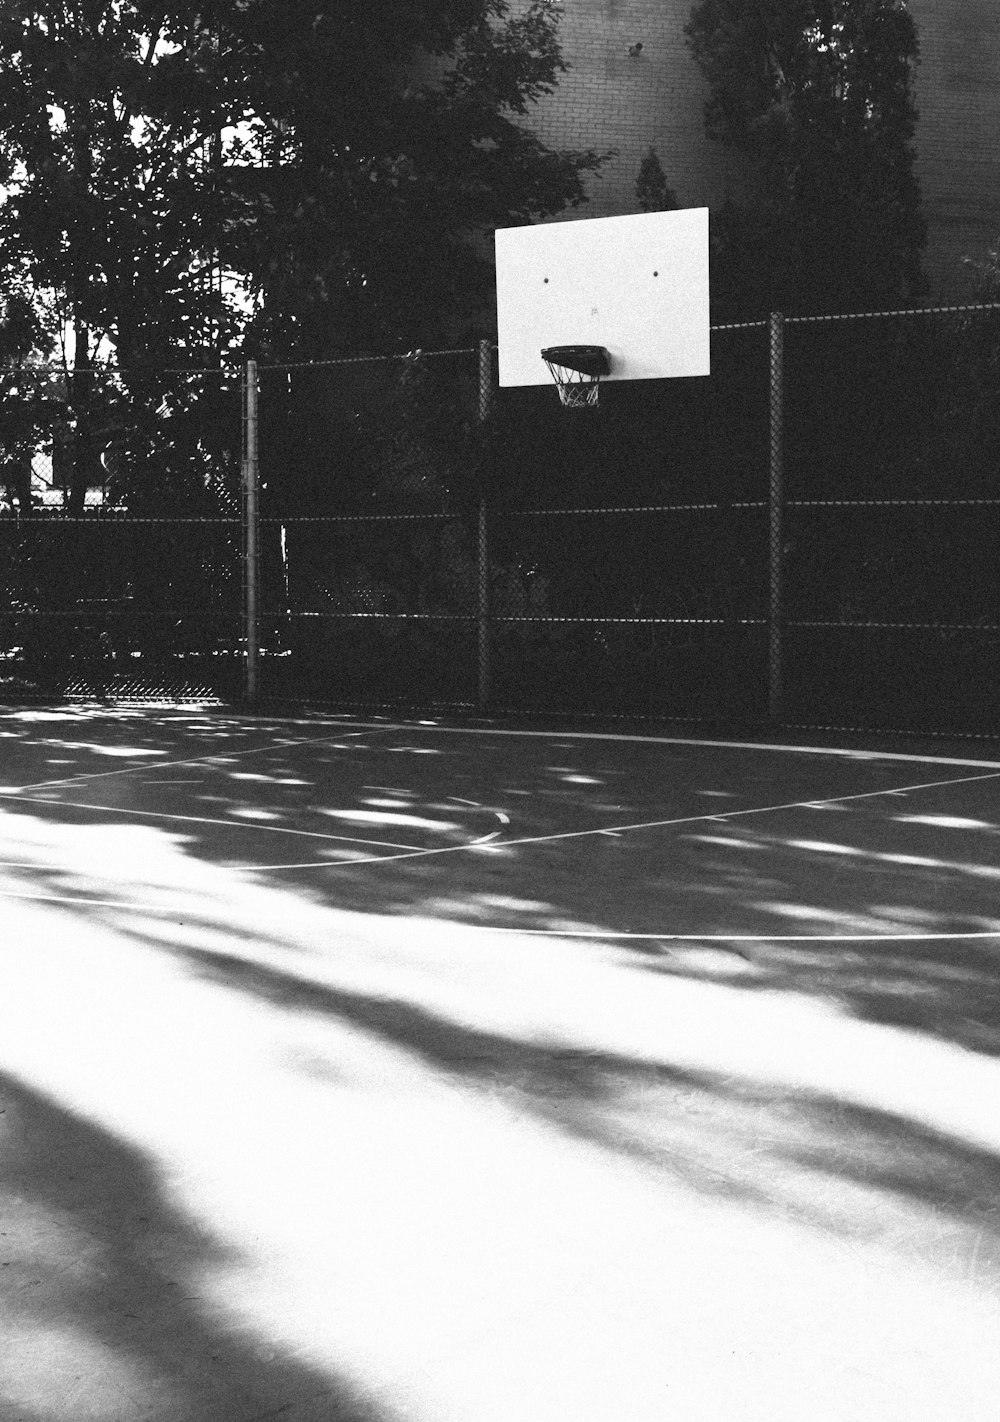 panier de basket-ball blanc sur un terrain extérieur